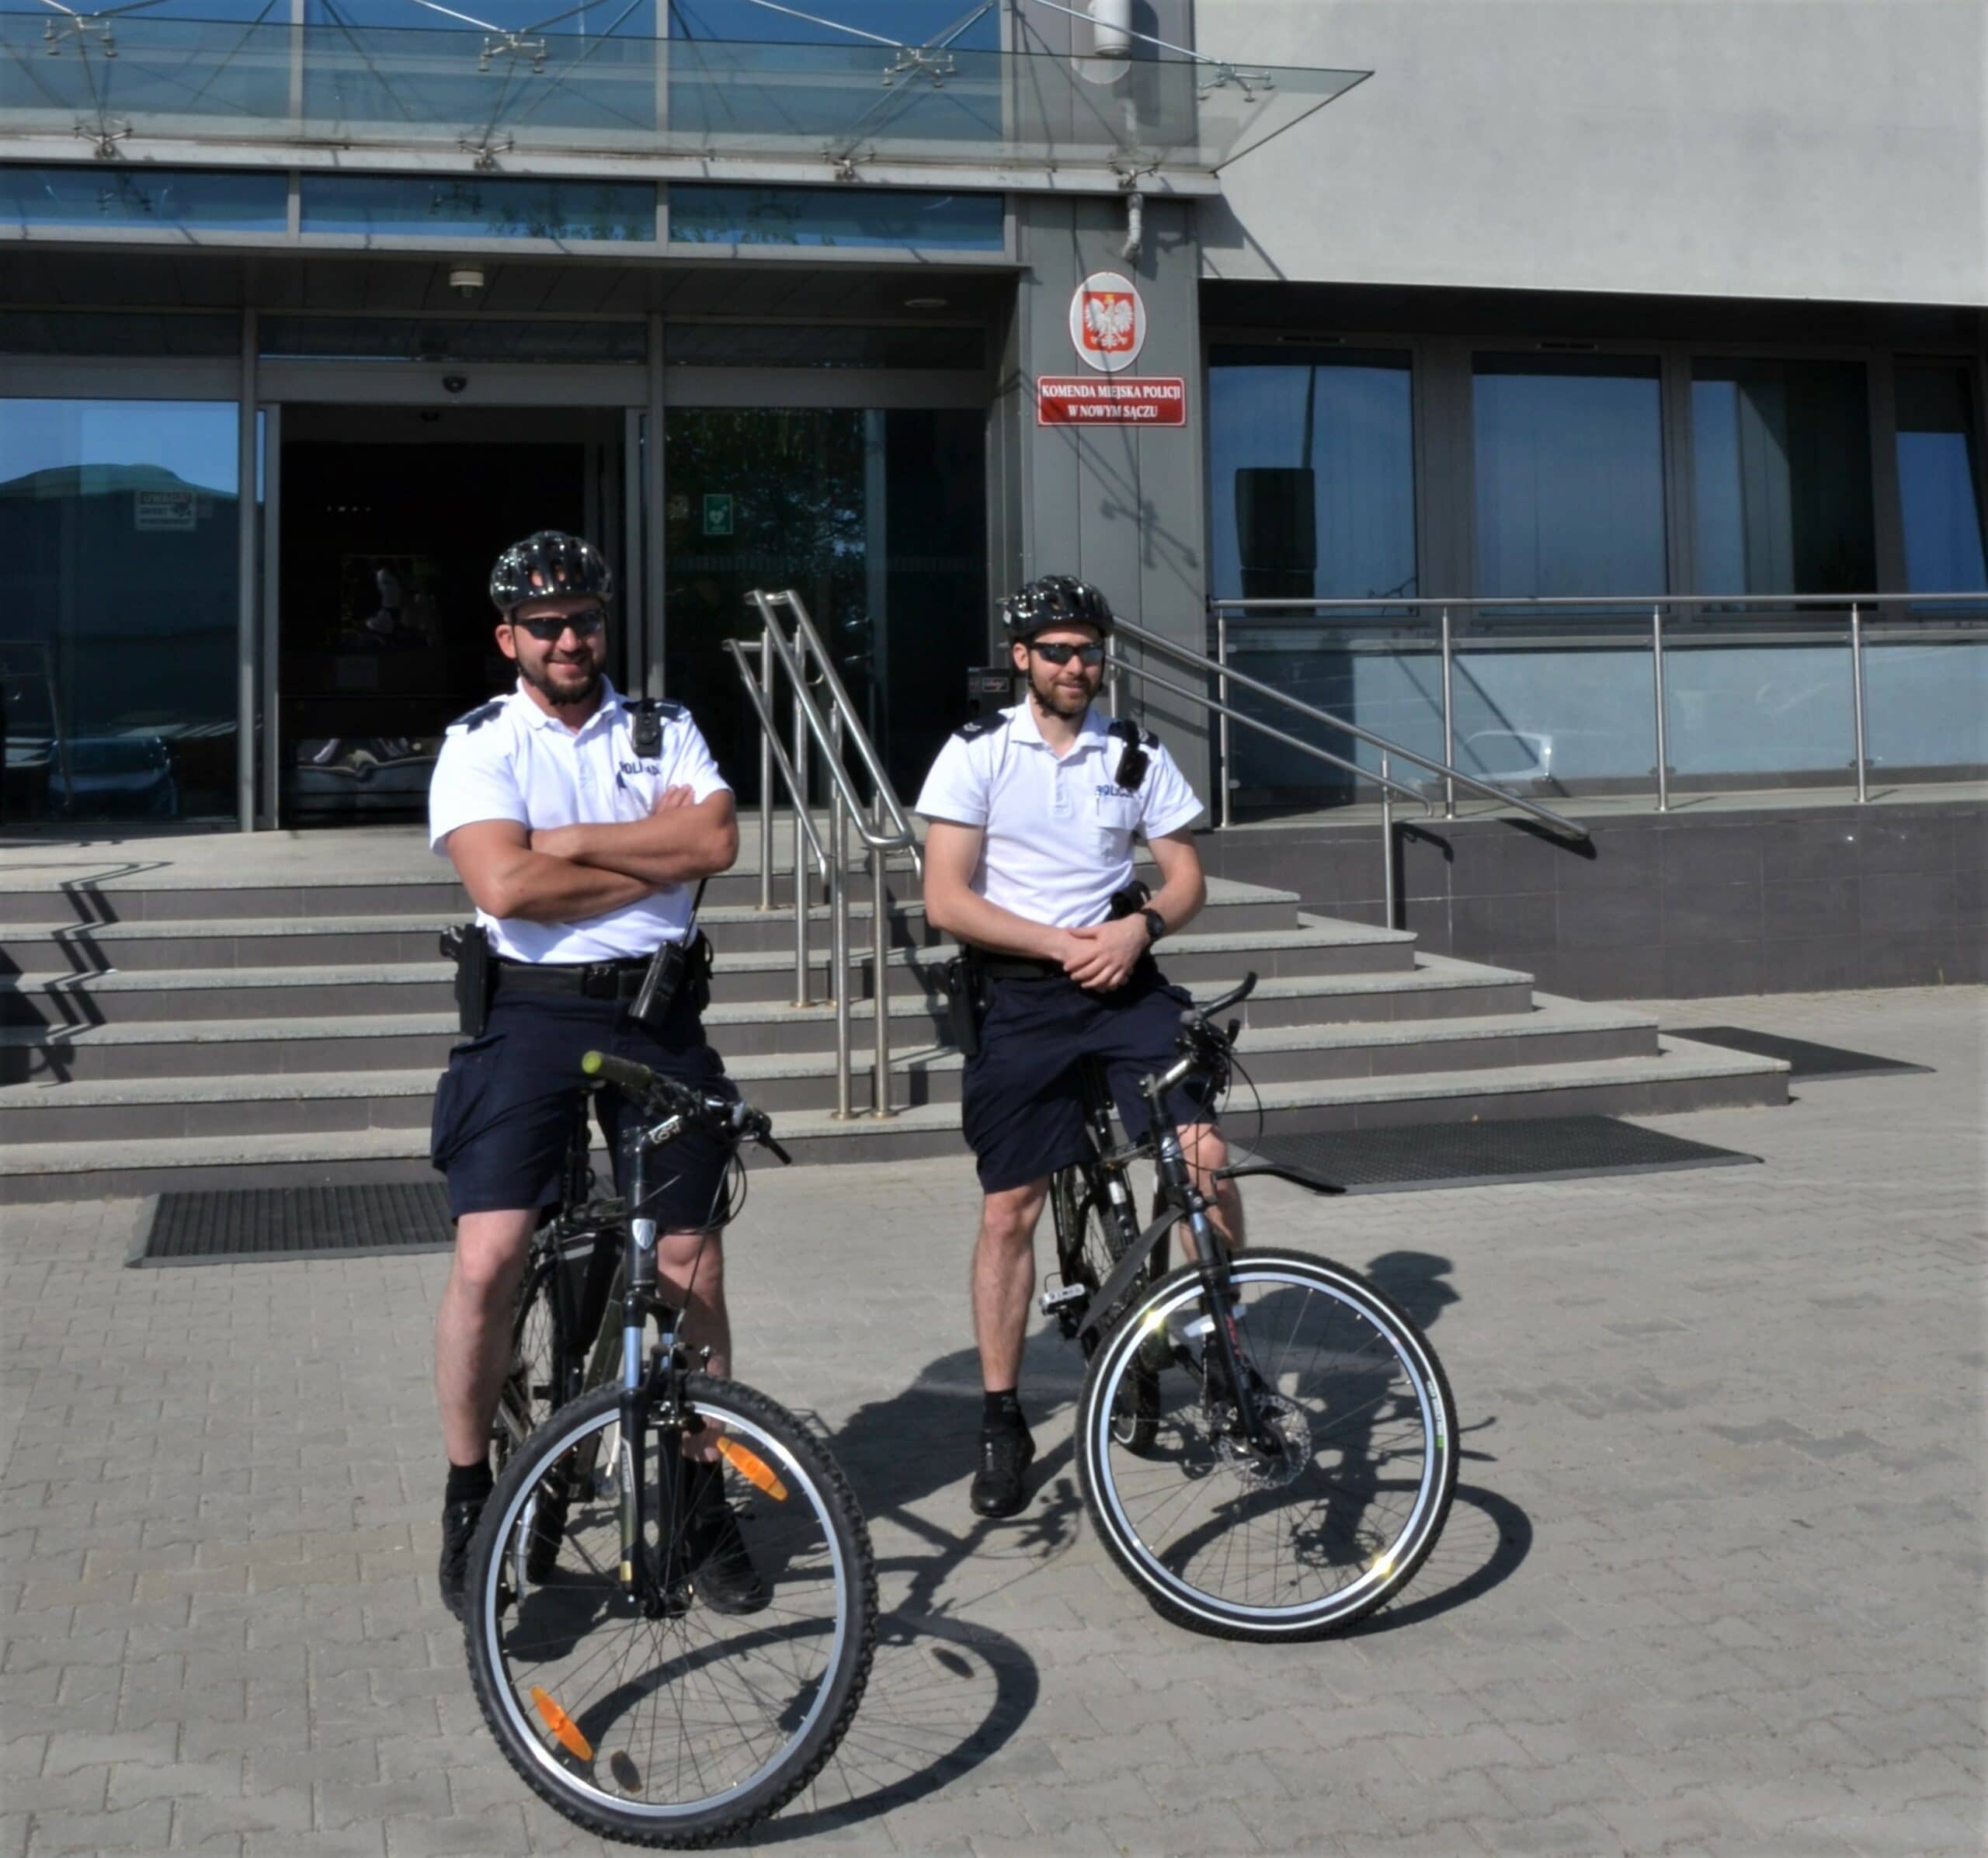 policyjne patrole na rowerze, Nowy Sącz, Sądecczyzna, powiat nowosądecki